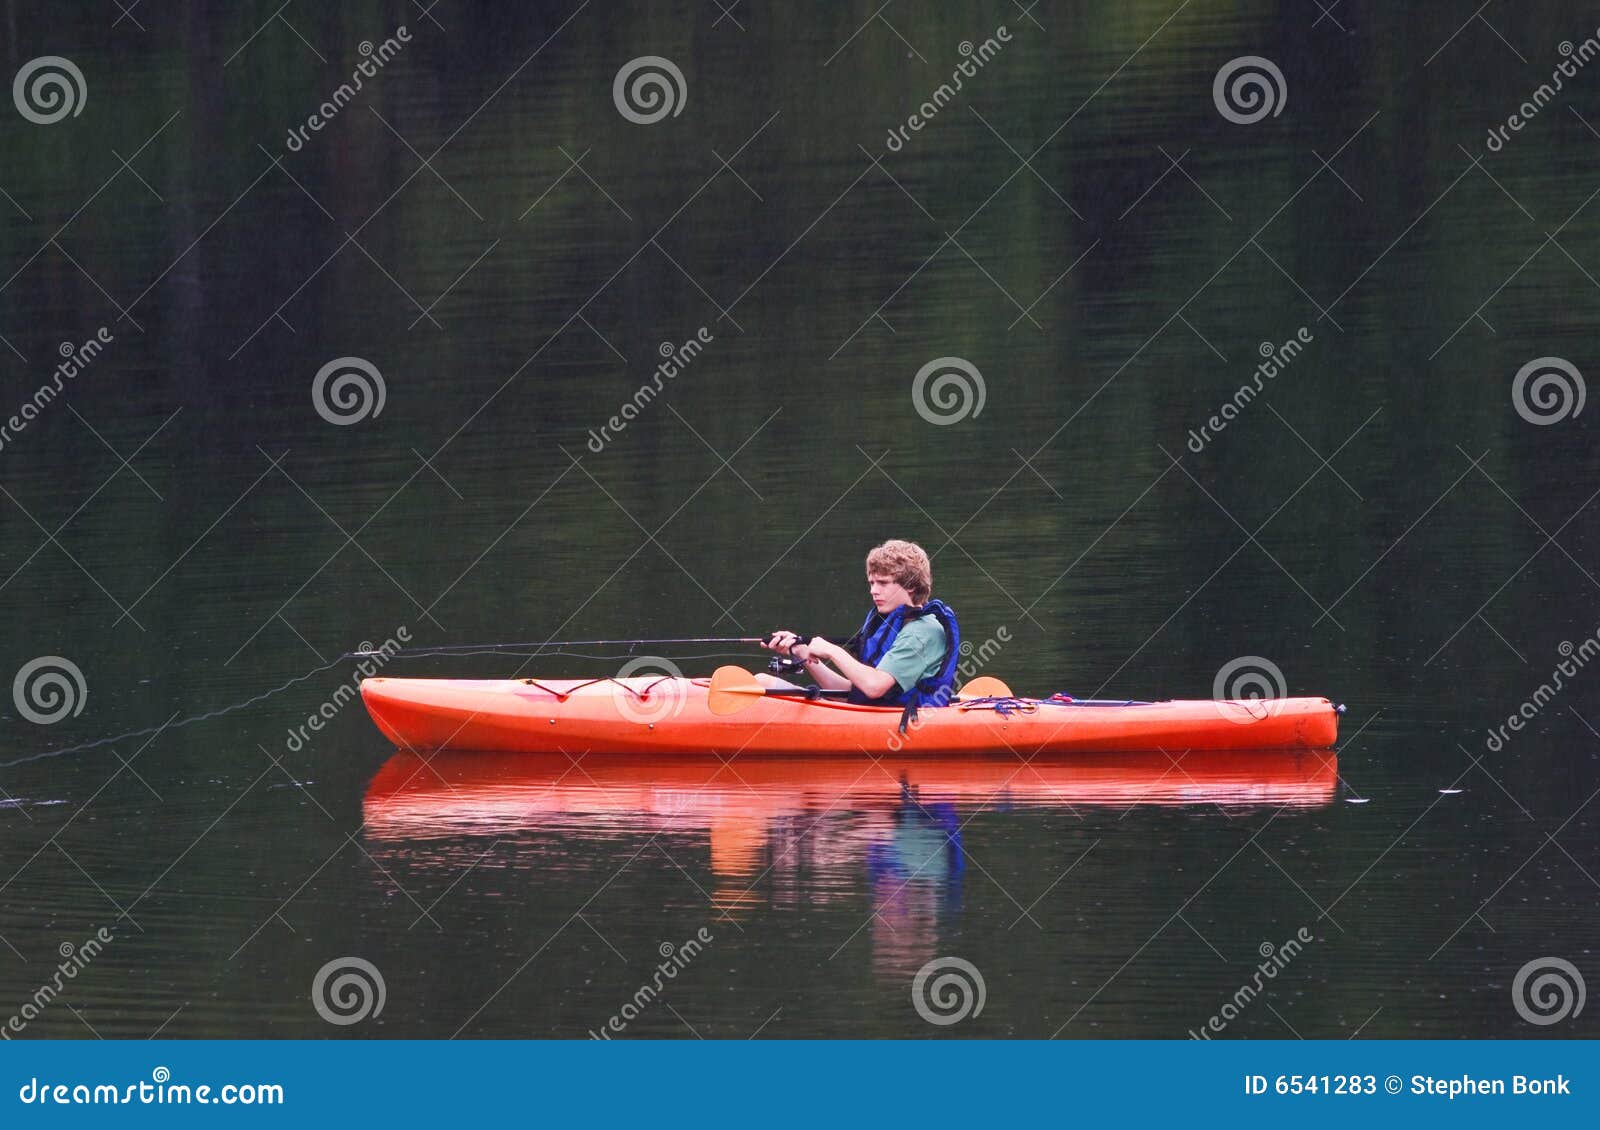 fishing from kayak